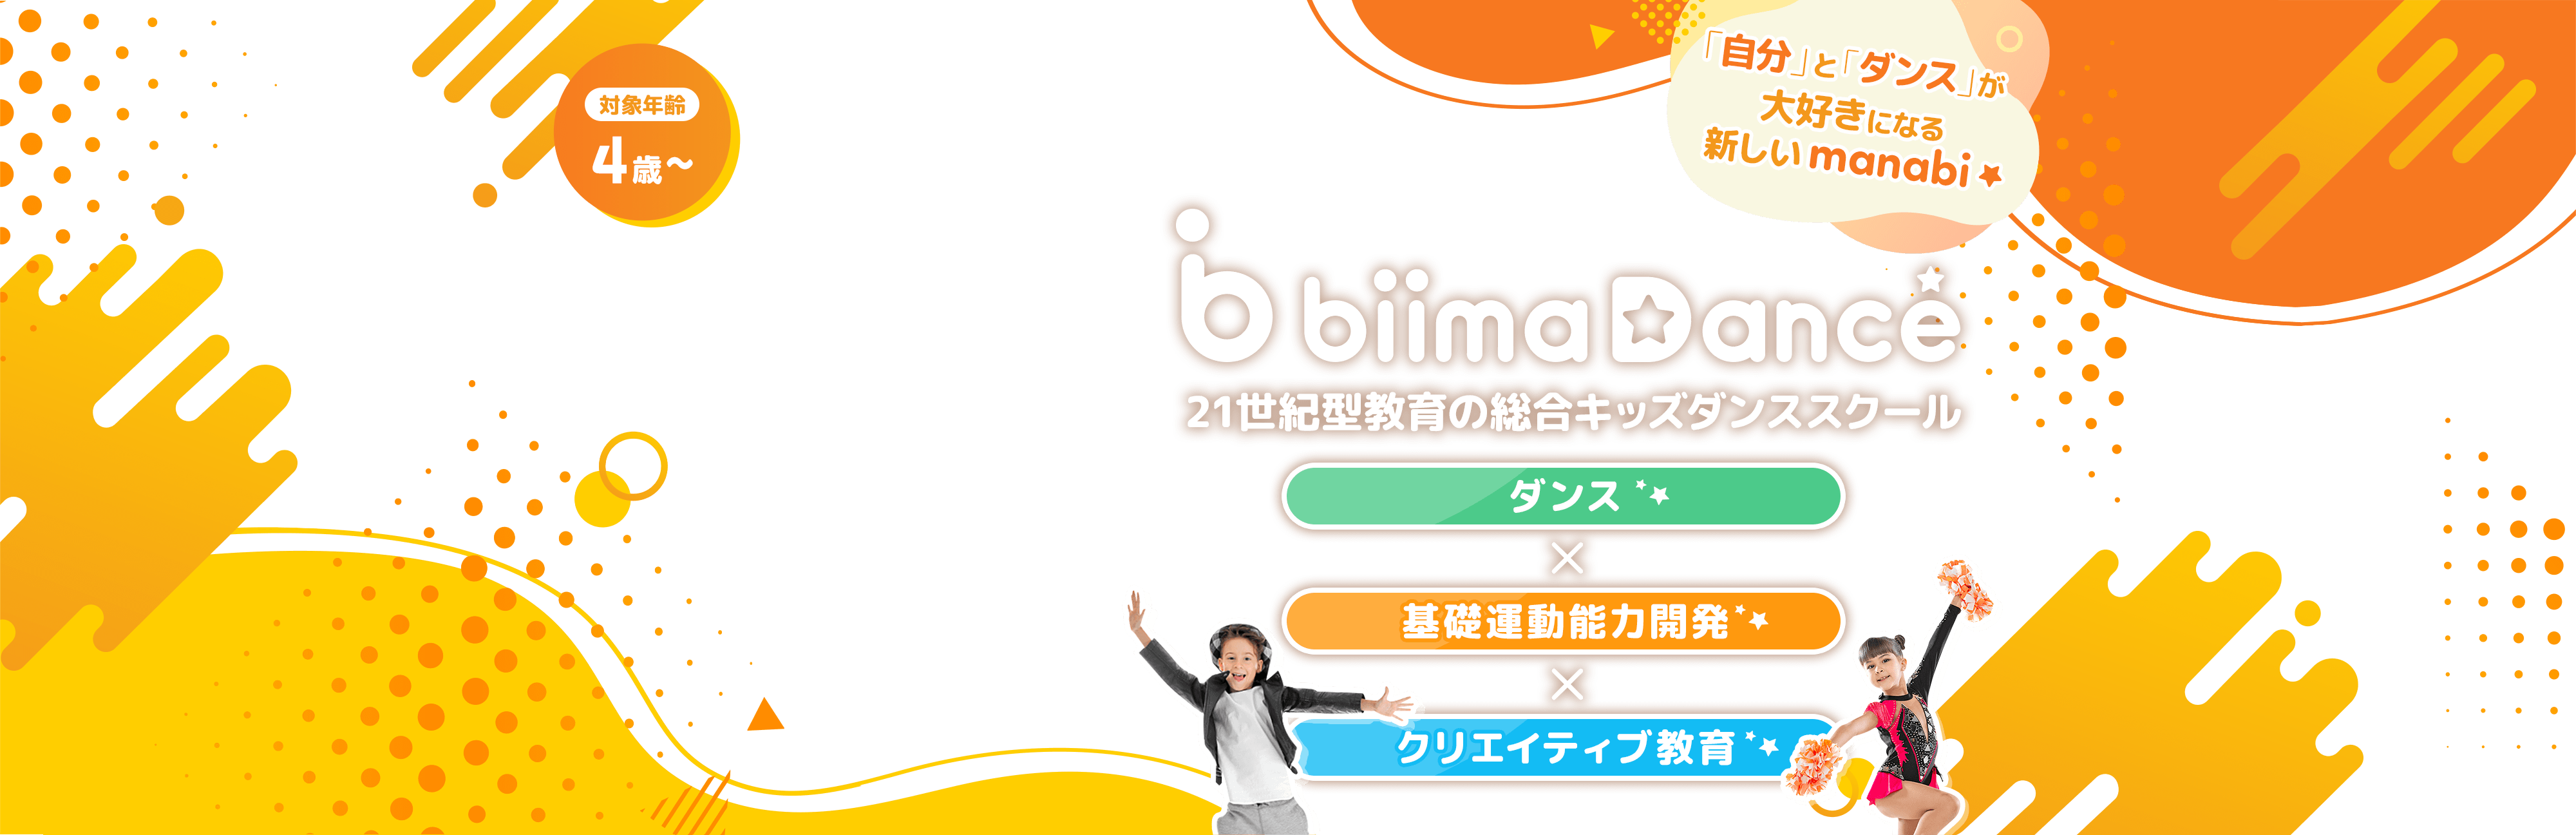 biima Dance 21世紀型教育の総合キッズダンススクール